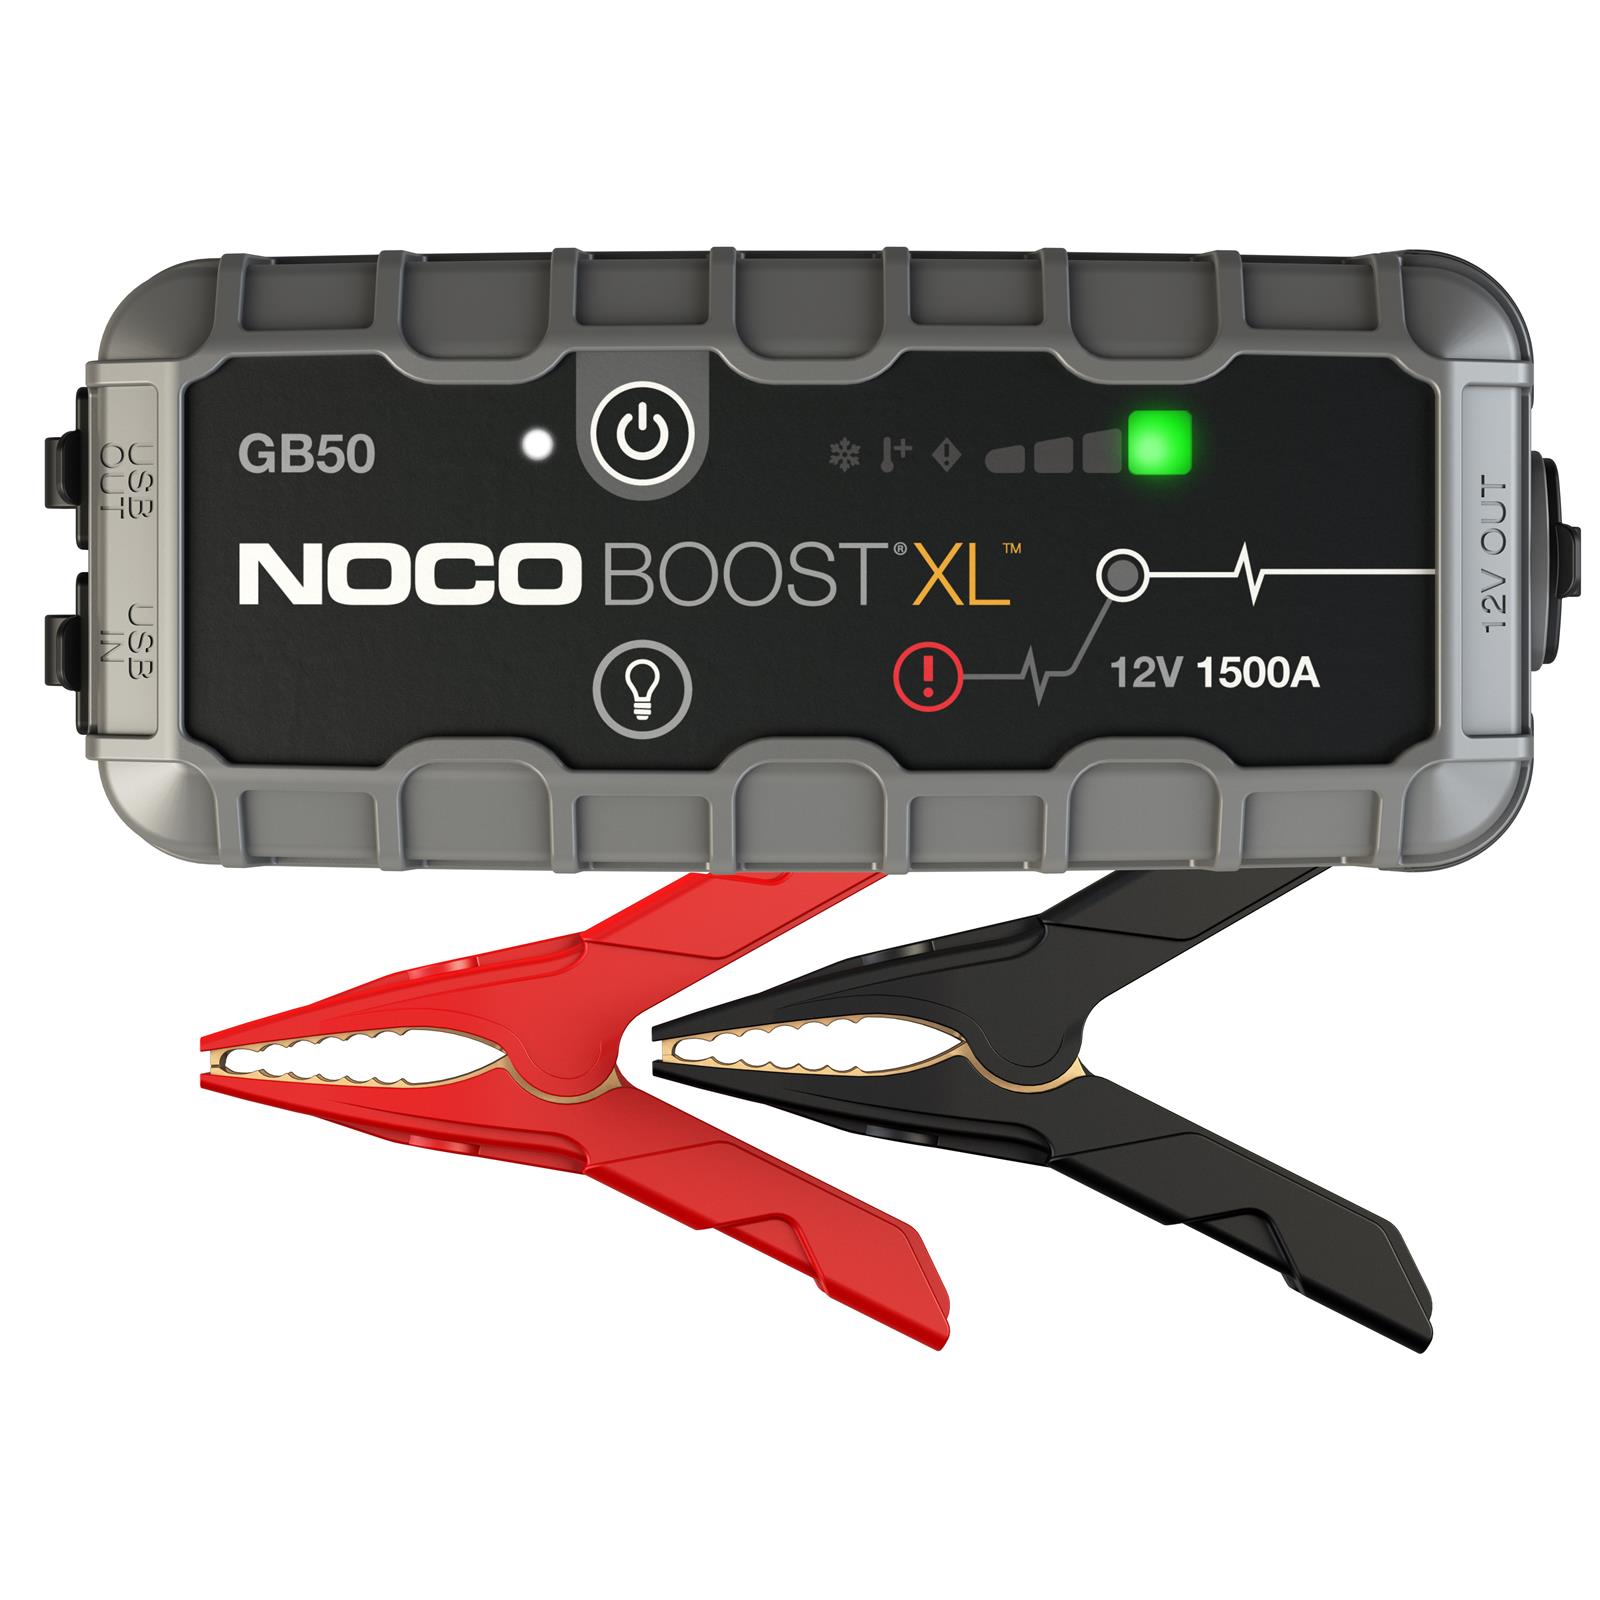 NOCO GB50 NOCO Genius Boost Plus Jump Starters